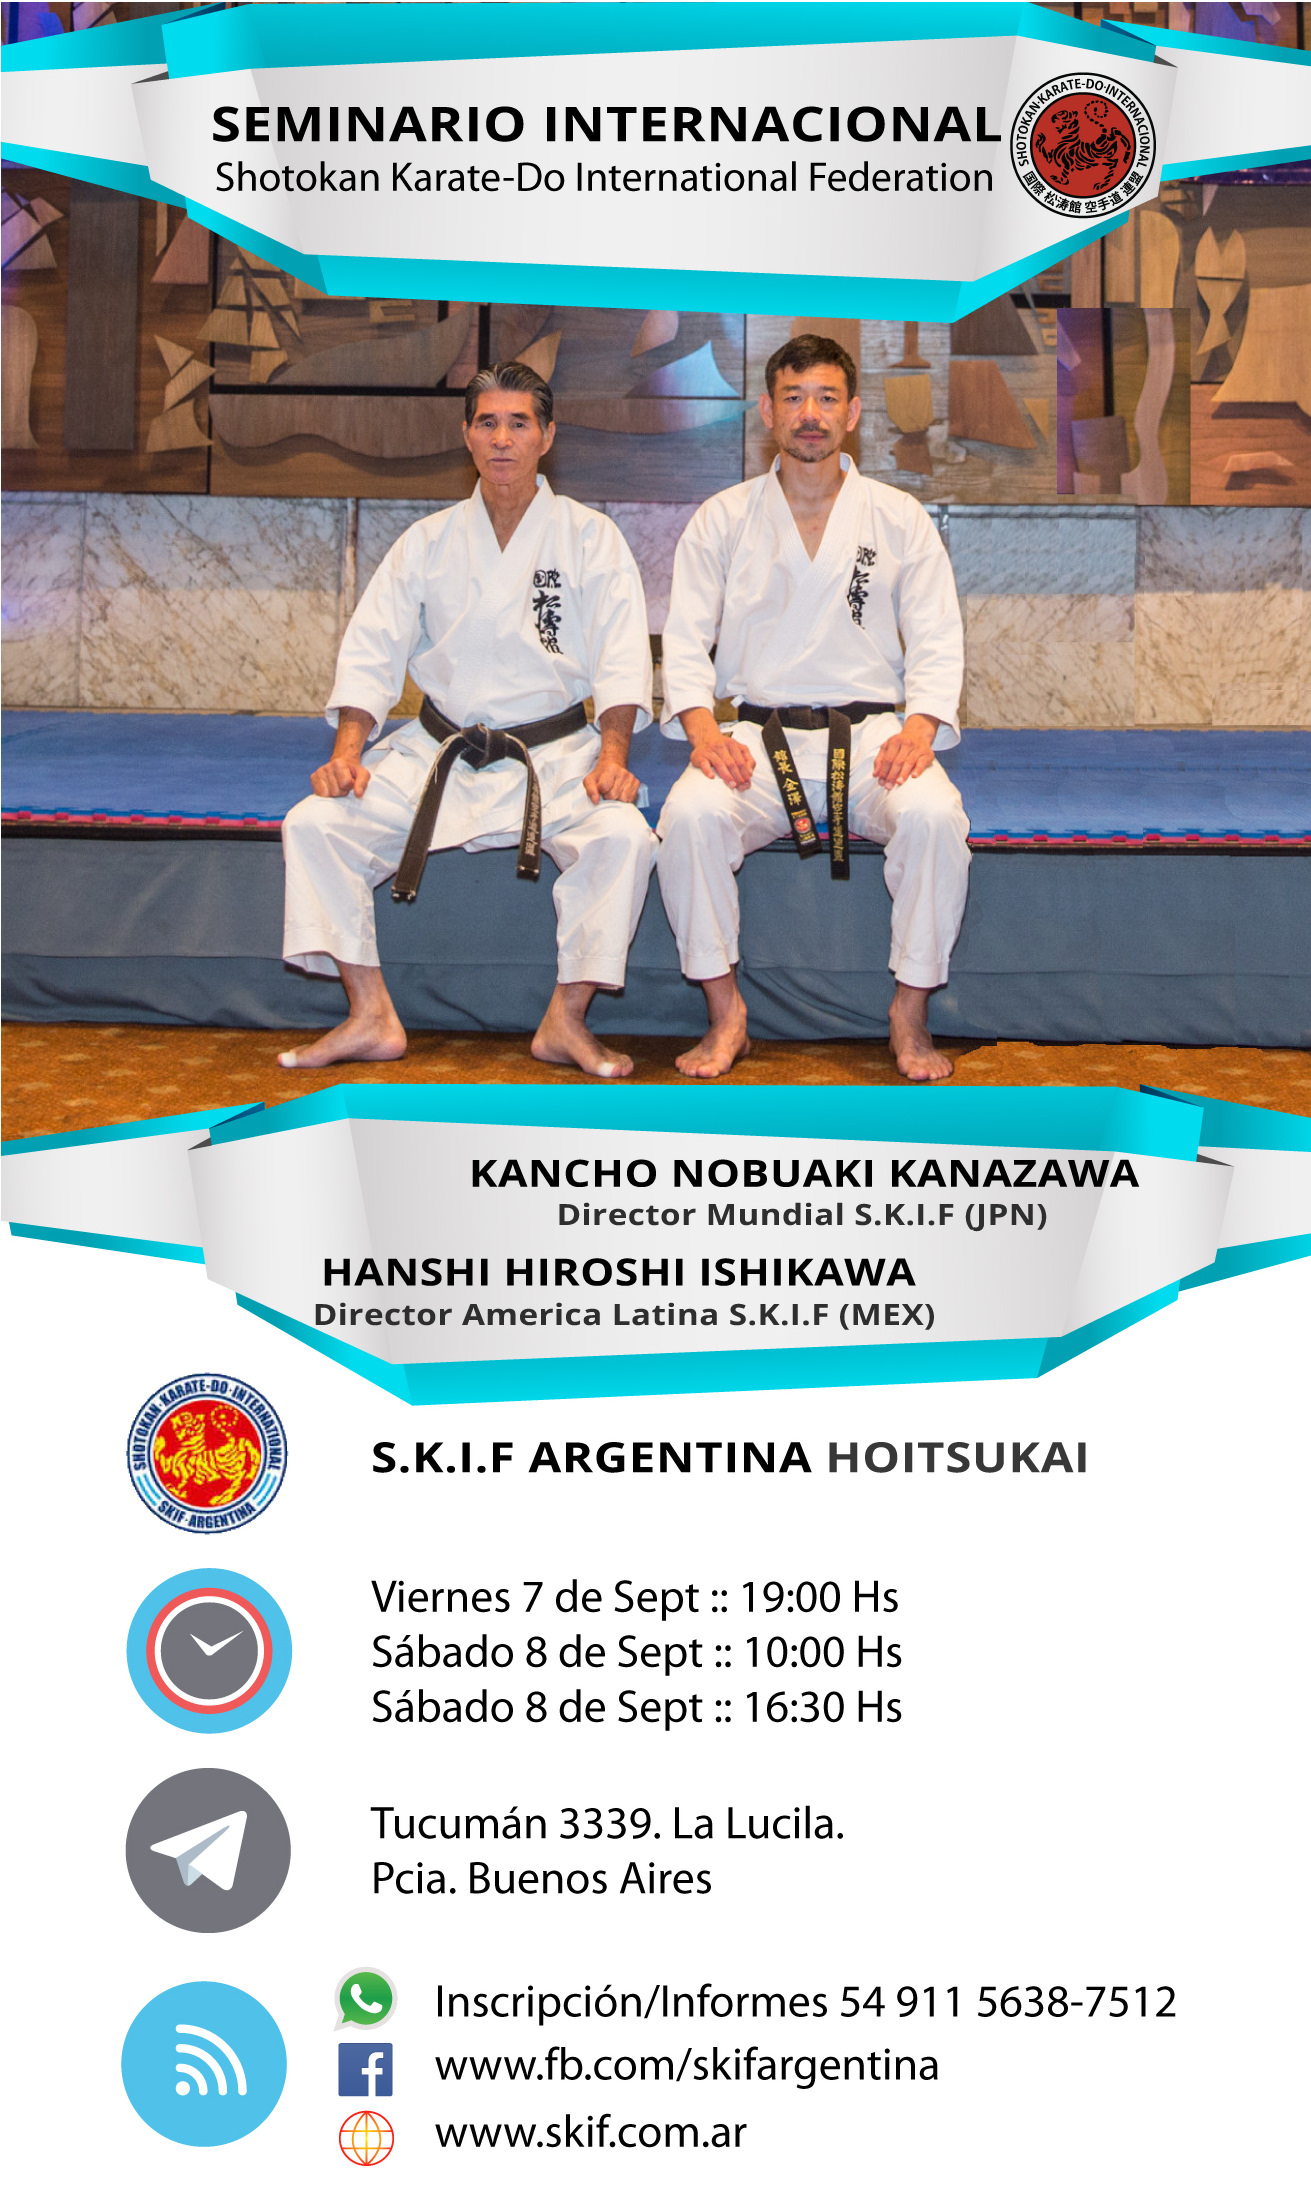 Seminario SKIF a cargo de Kancho Nobuaki Kanazawa y Hanshi Hiroshi Ishikawa. Viernes 7 y Sábado 8 de Septiembre.